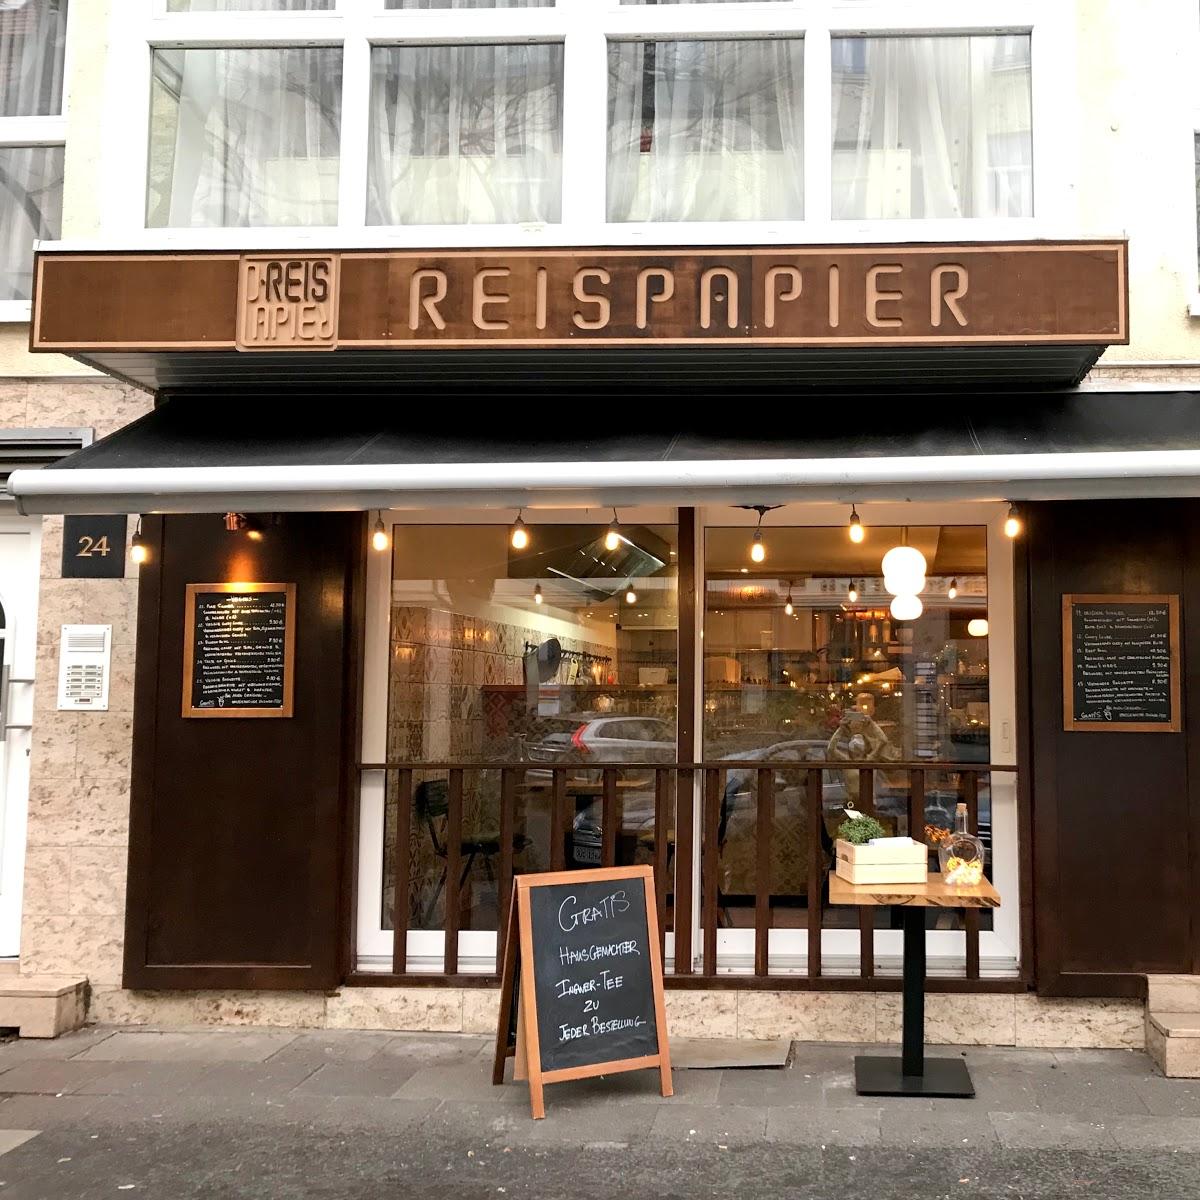 Restaurant "Reispapier" in Köln